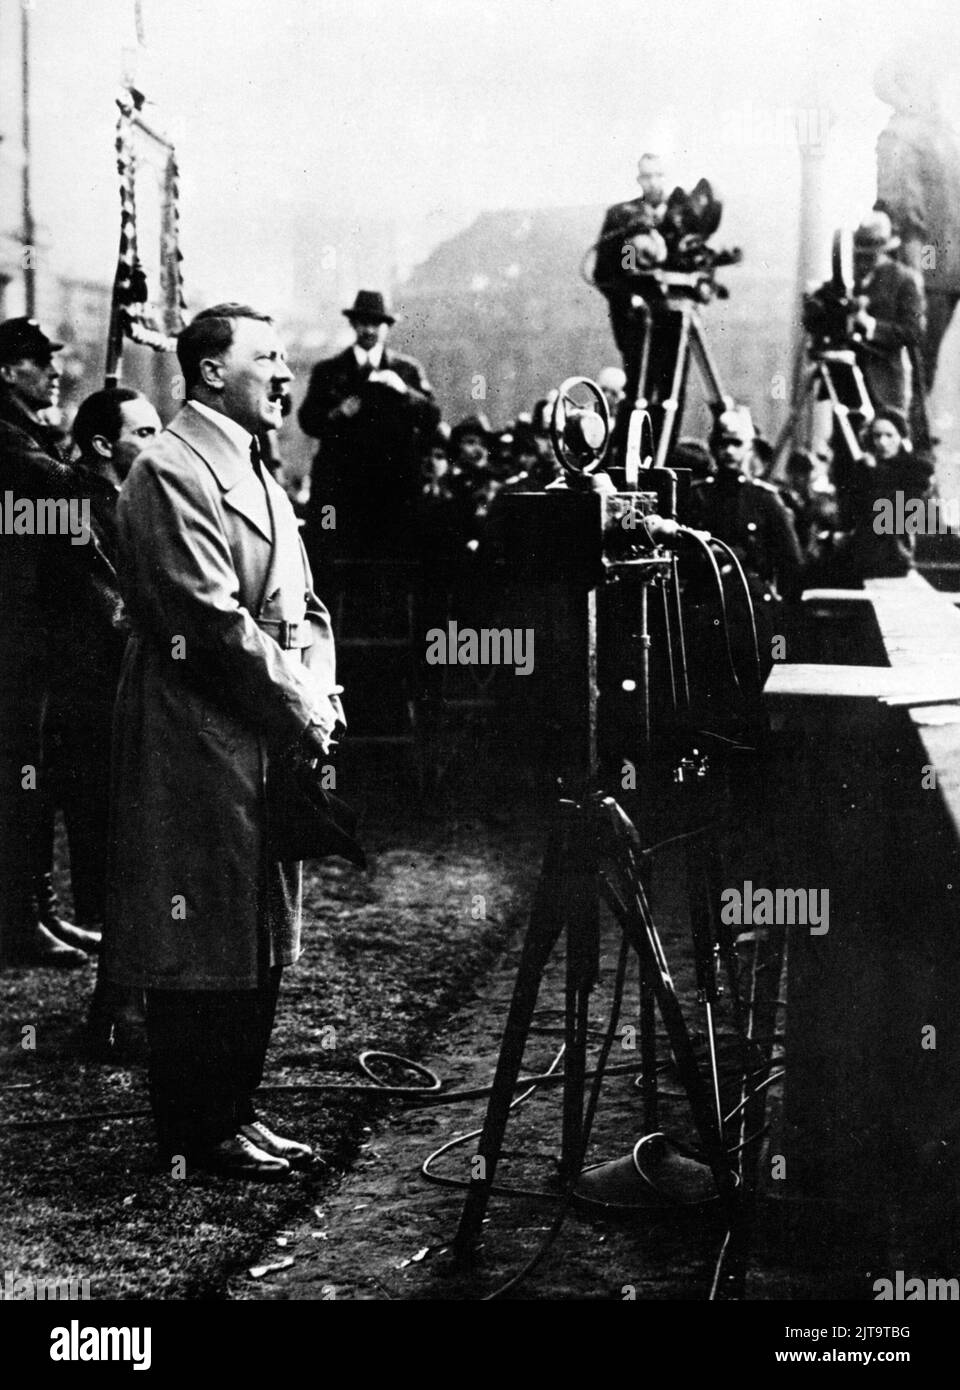 Una foto d'epoca del 1933 che mostra il dittatore tedesco nazista Adolf Hitler che si rivolge alle folle durante un raduno elettorale Foto Stock